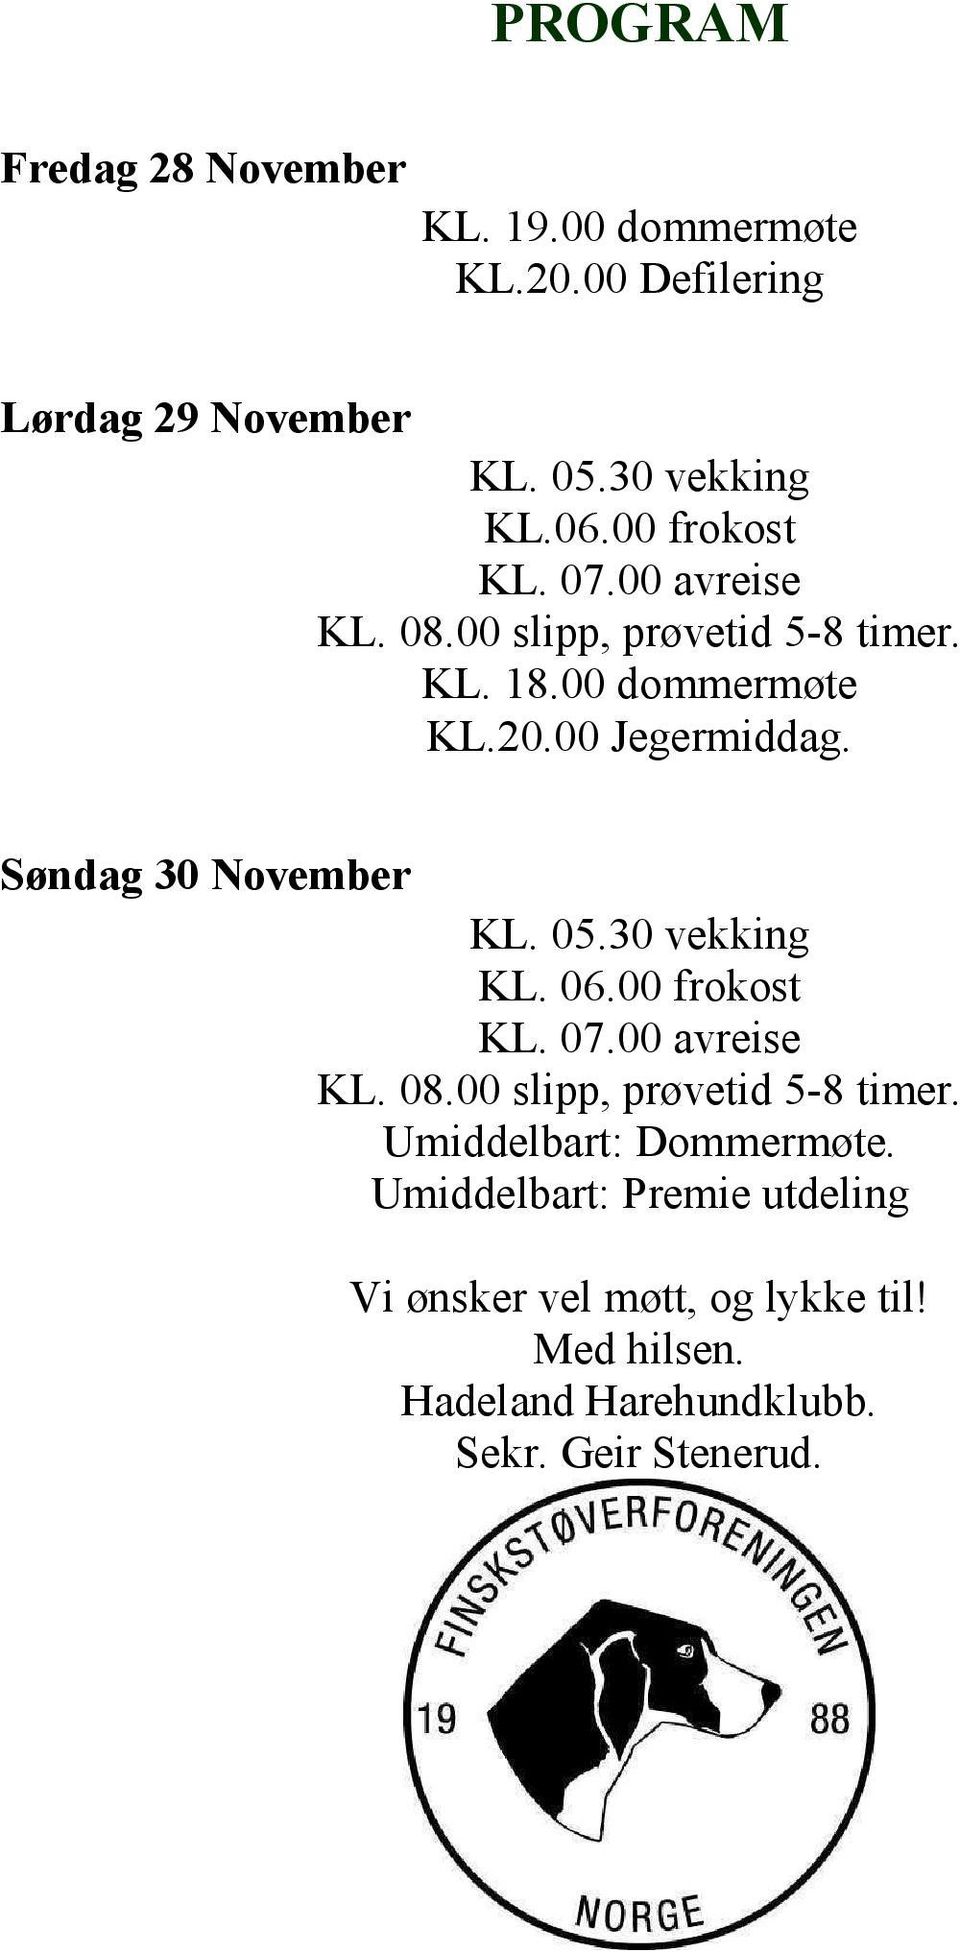 Søndag 30 November KL. 05.30 vekking KL. 06.00 frokost KL. 07.00 avreise KL. 08.00 slipp, prøvetid 5-8 timer.